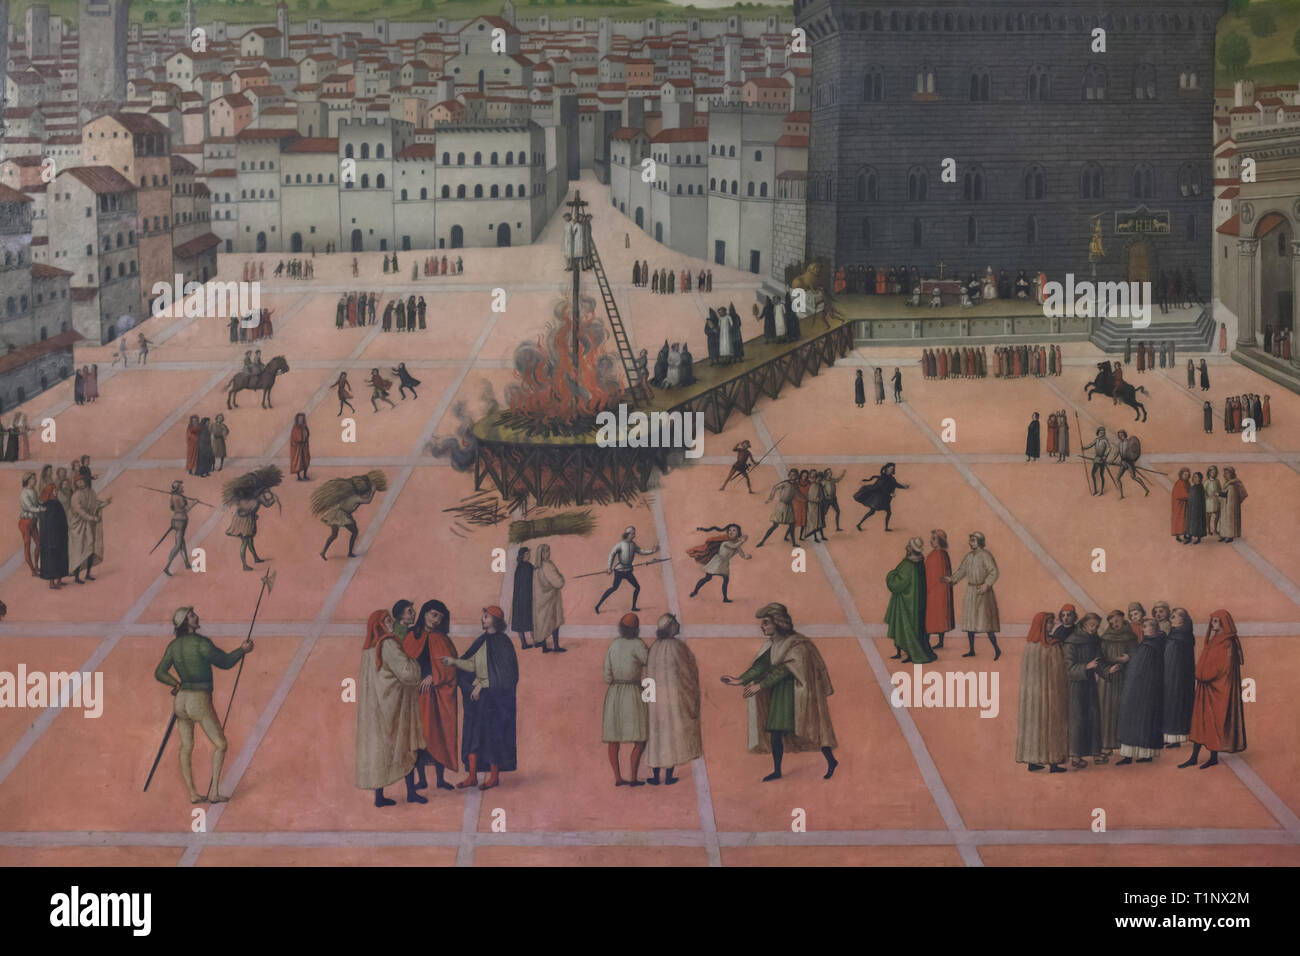 Malerei 'Martyrdom von Girolamo Savonarola in Piazza della Signoria am 23. Mai 1498" von einem unbekannten Maler aus dem Ende des 15. Jahrhunderts datiert auf Anzeige in der savonarola Zelle im San Marco Kloster (Convento di San Marco), nun das San Marco Museum (Museo Nazionale di San Marco) in Florenz, Toskana, Italien. Stockfoto